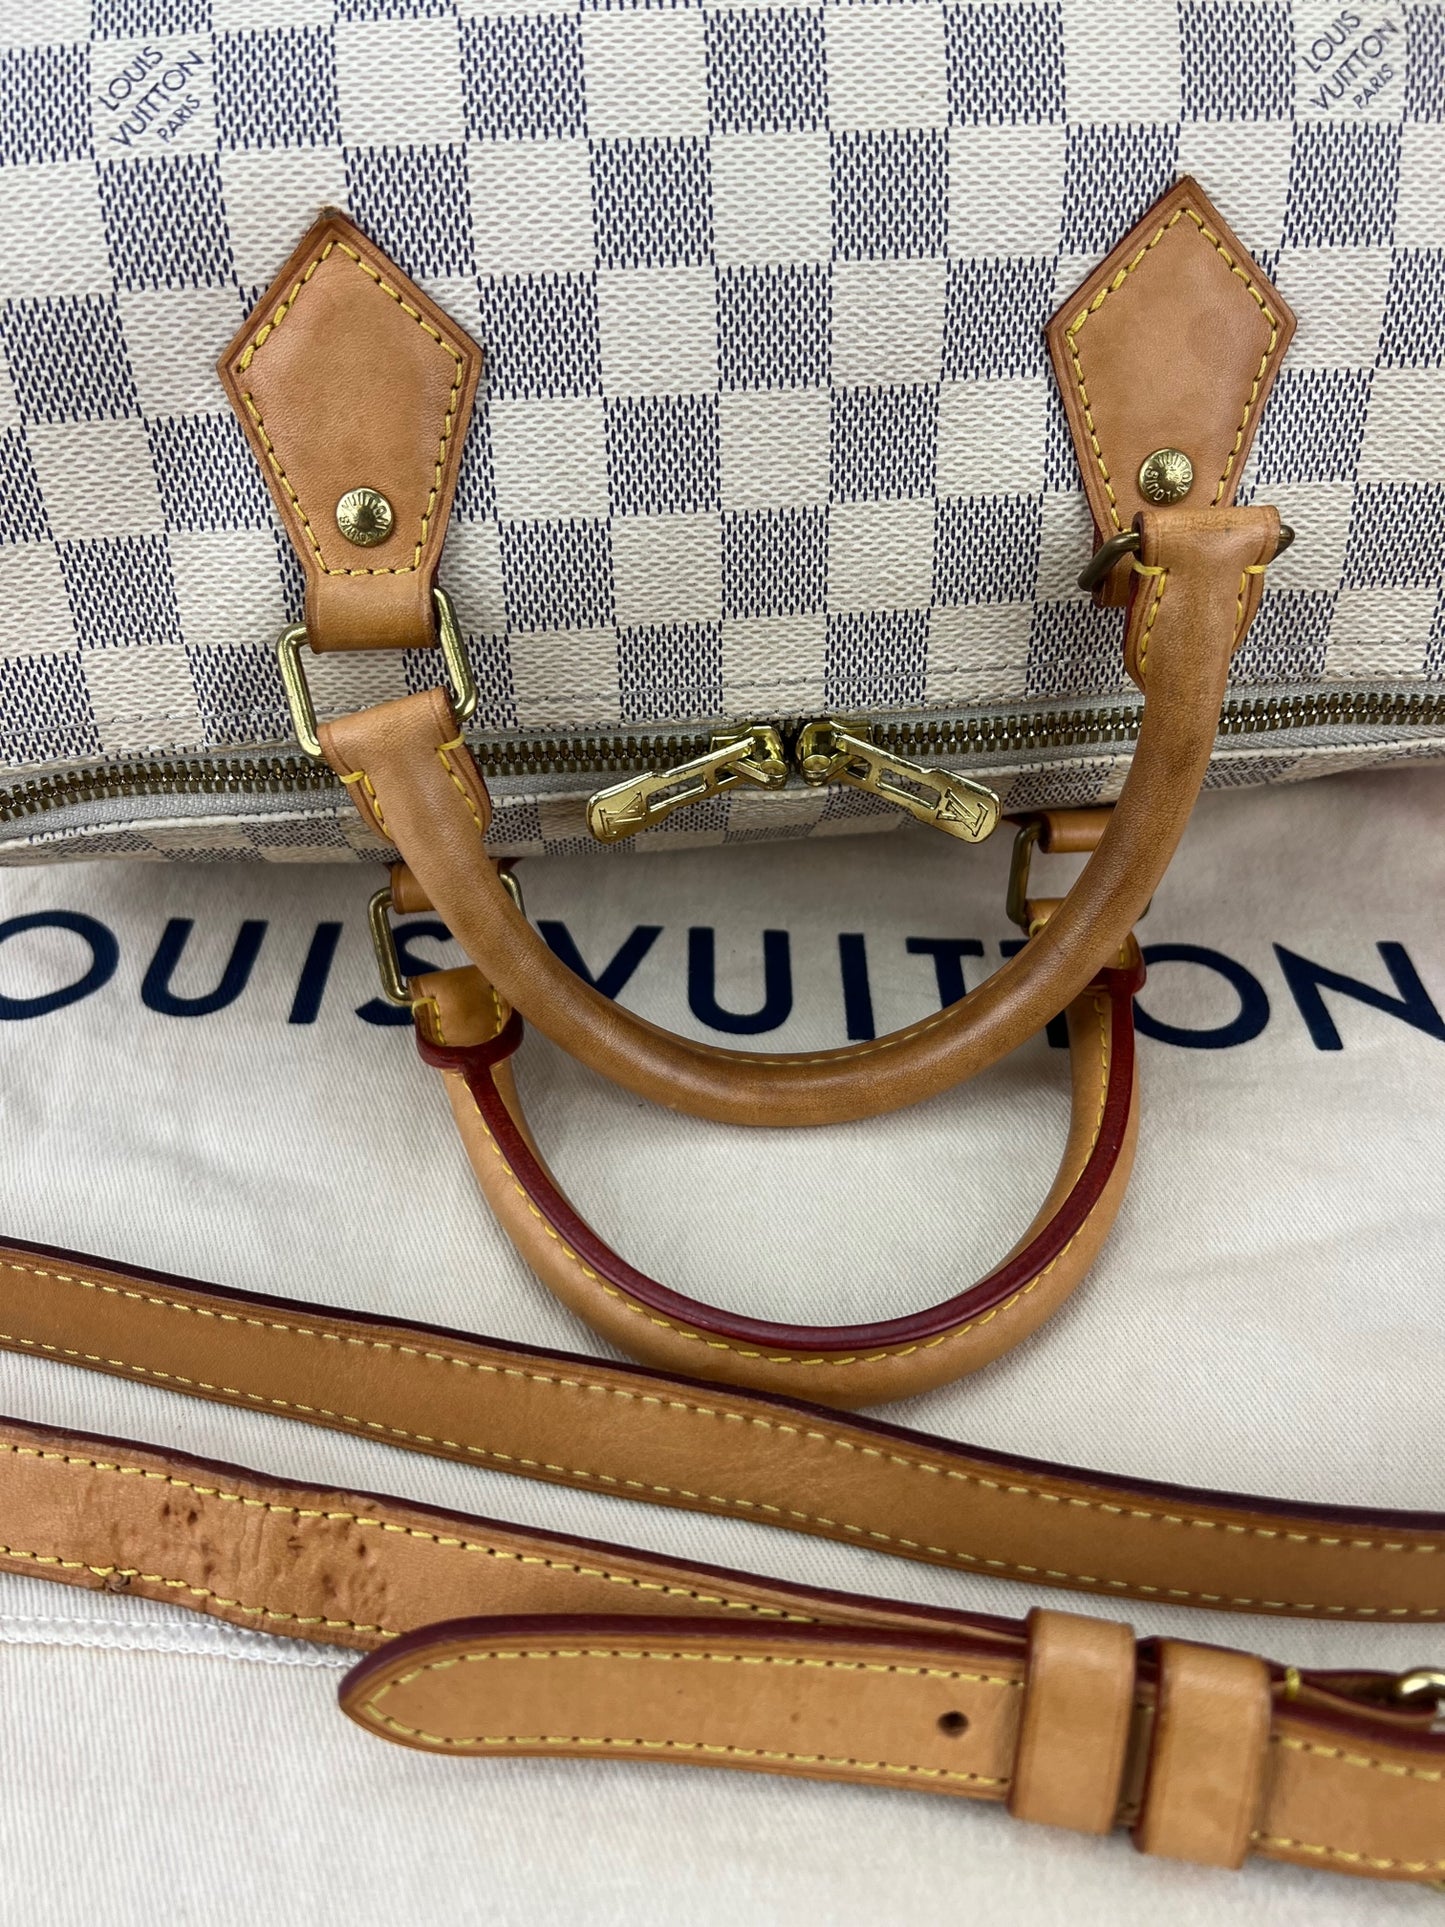 LOUIS VUITTON Speedy Bandouliere 30 Damier Azur Shoulder Hand Bag Adde –  Debsluxurycloset